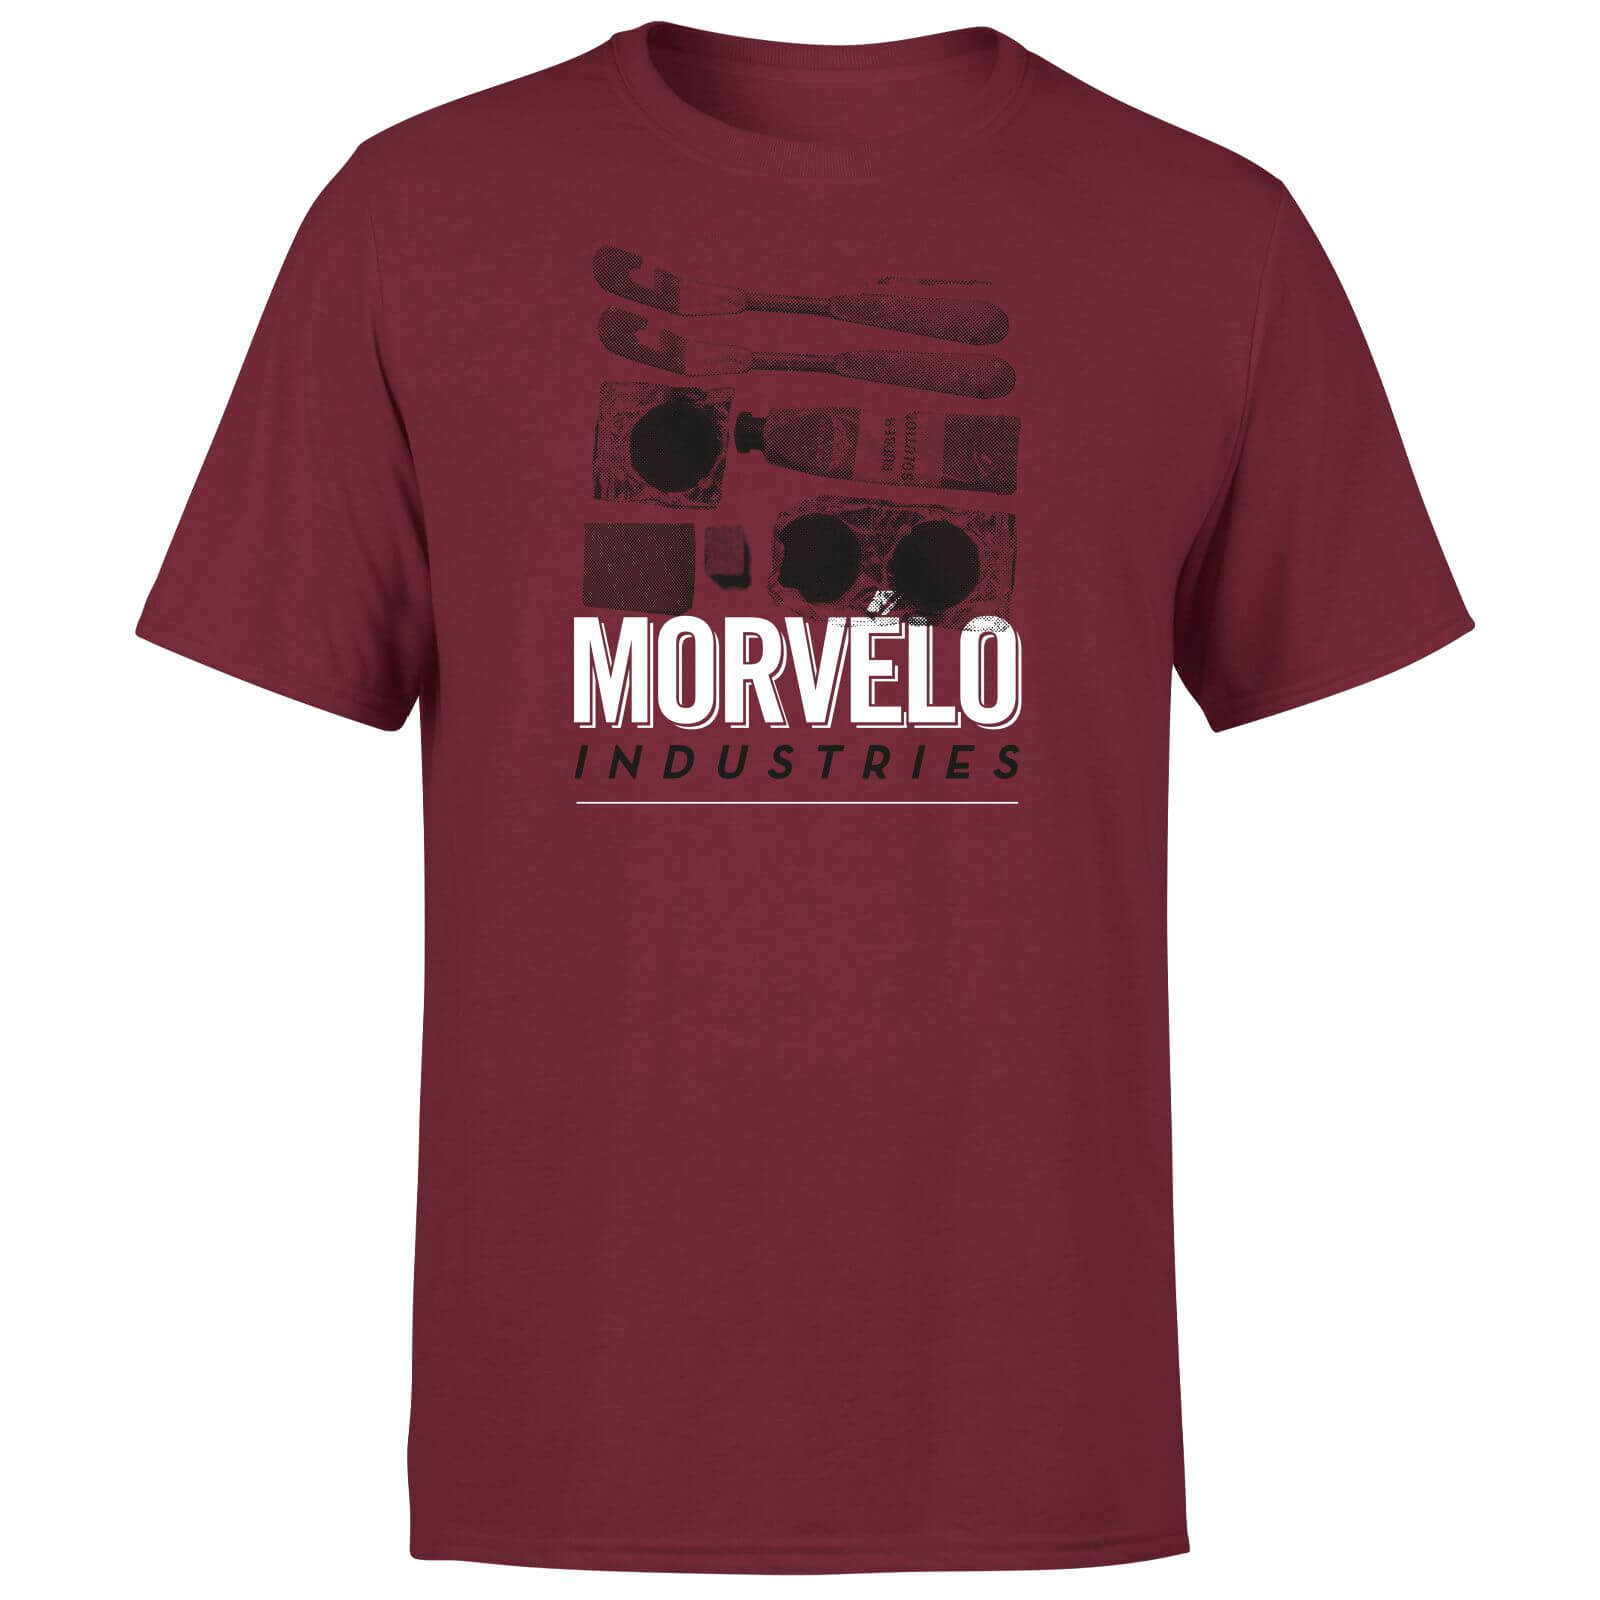 Morvelo Industries Men's T-Shirt - Burgundy - XXL - Burgundy